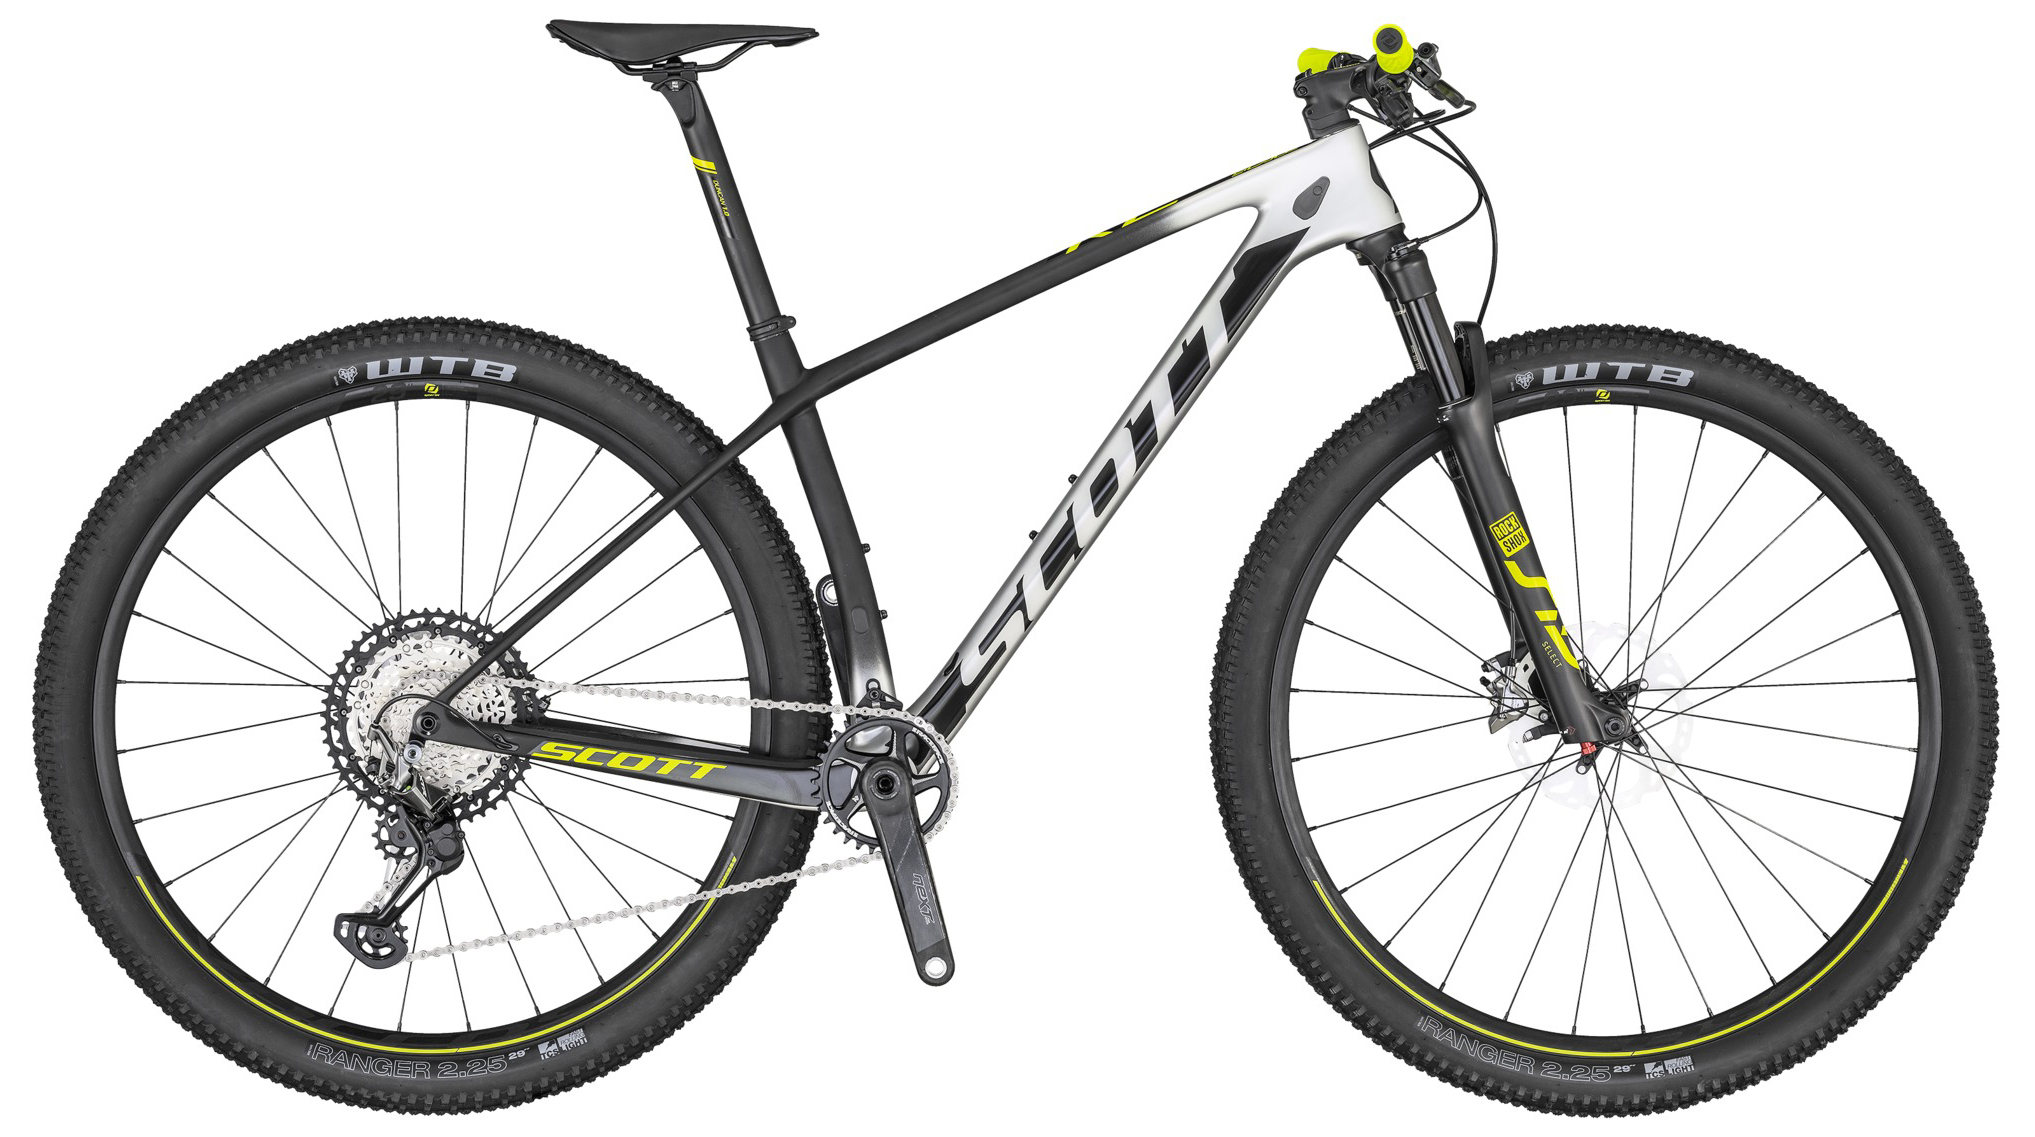  Отзывы о Горном велосипеде Scott Scale RC 900 Pro 2020